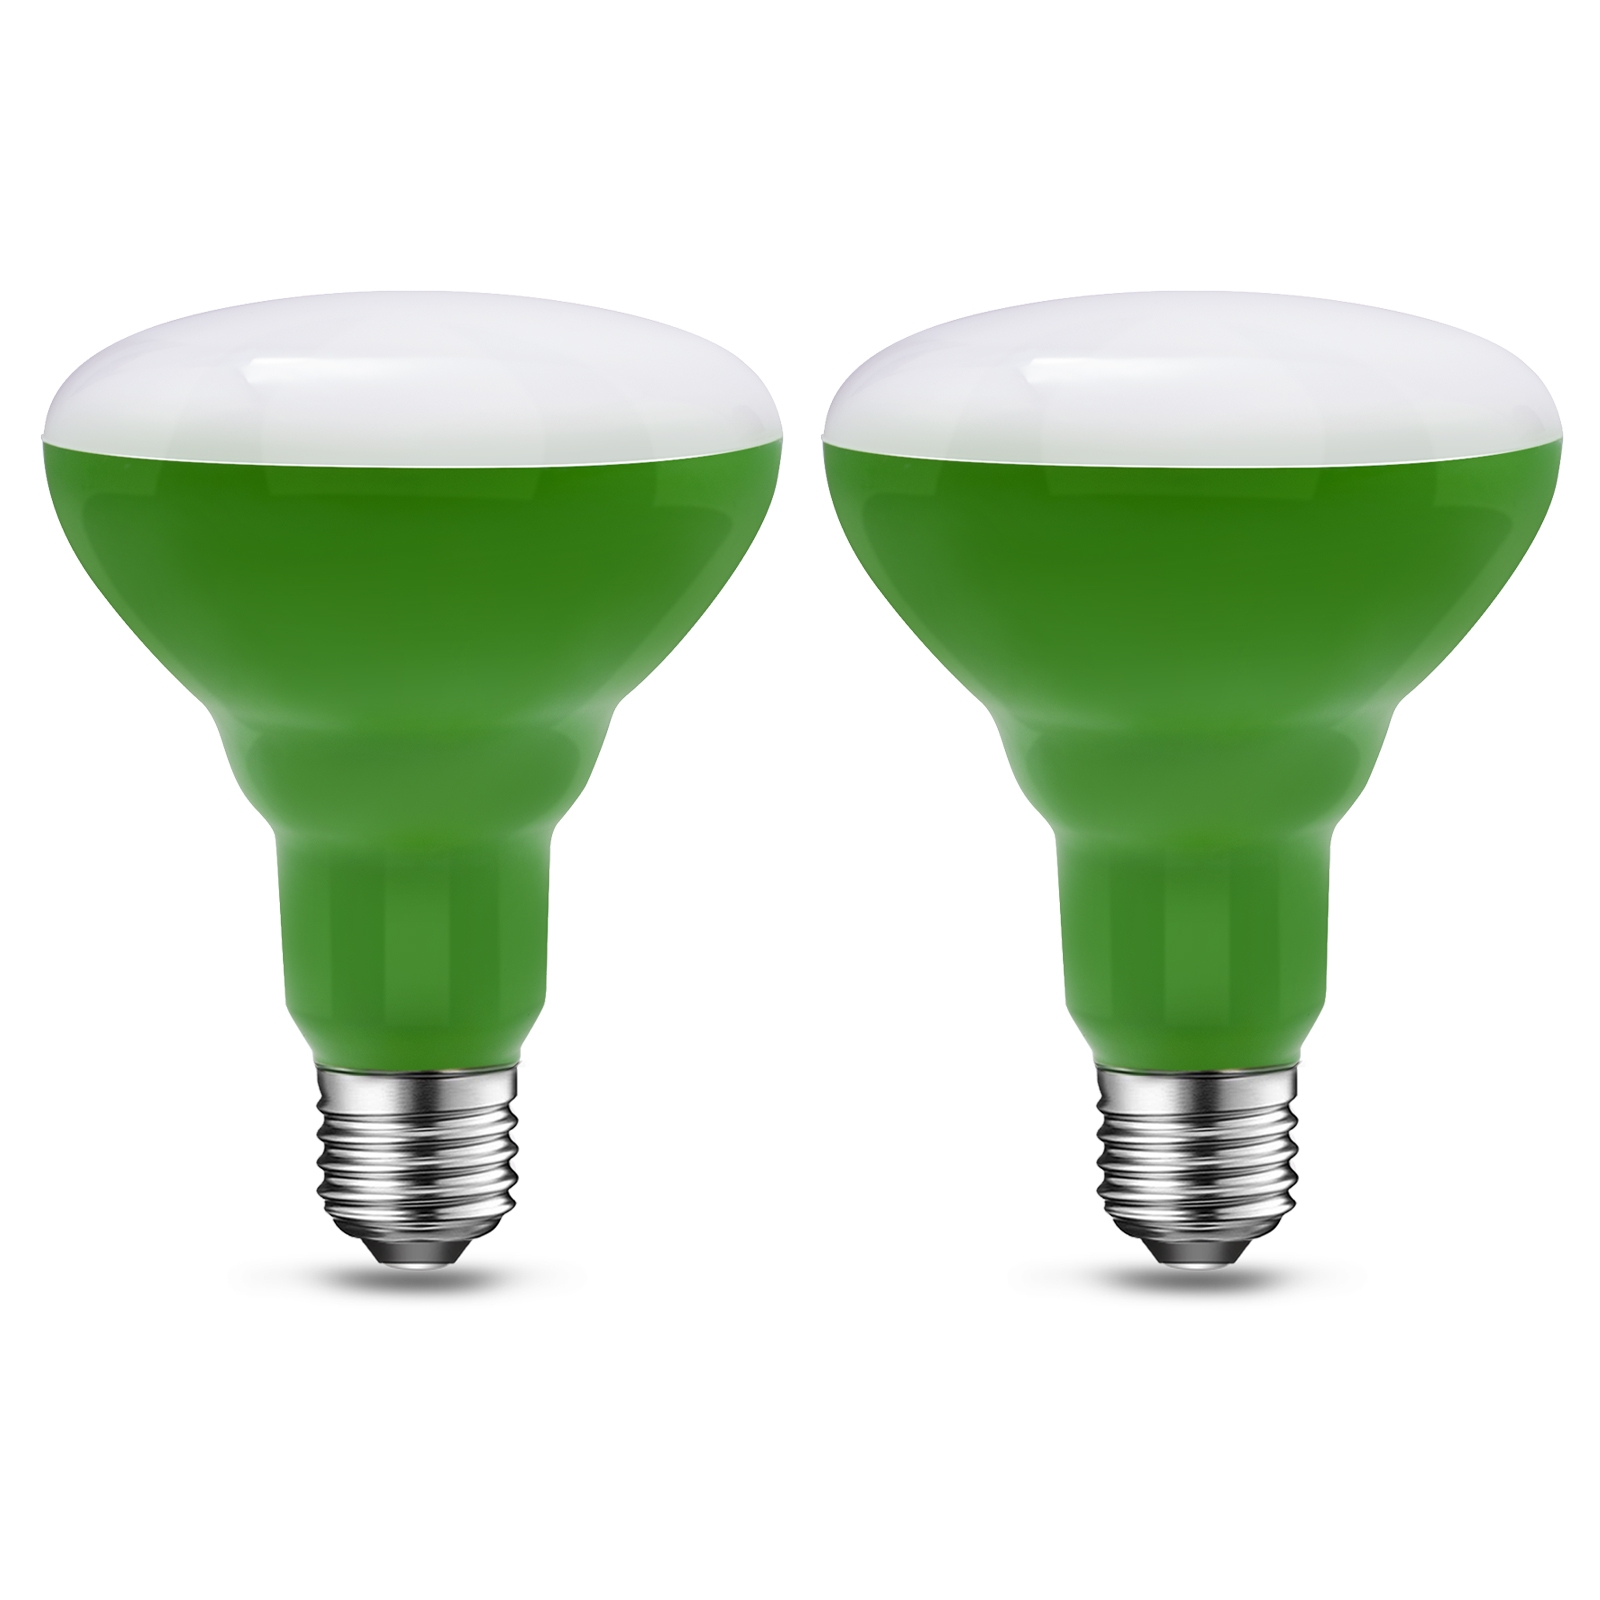 Grow Light Bulbs for Indoor Plants, 8.5W 2200K BR30 LED Grow Bulb, 60 Watt Equivalent Full Spectrum LED Light